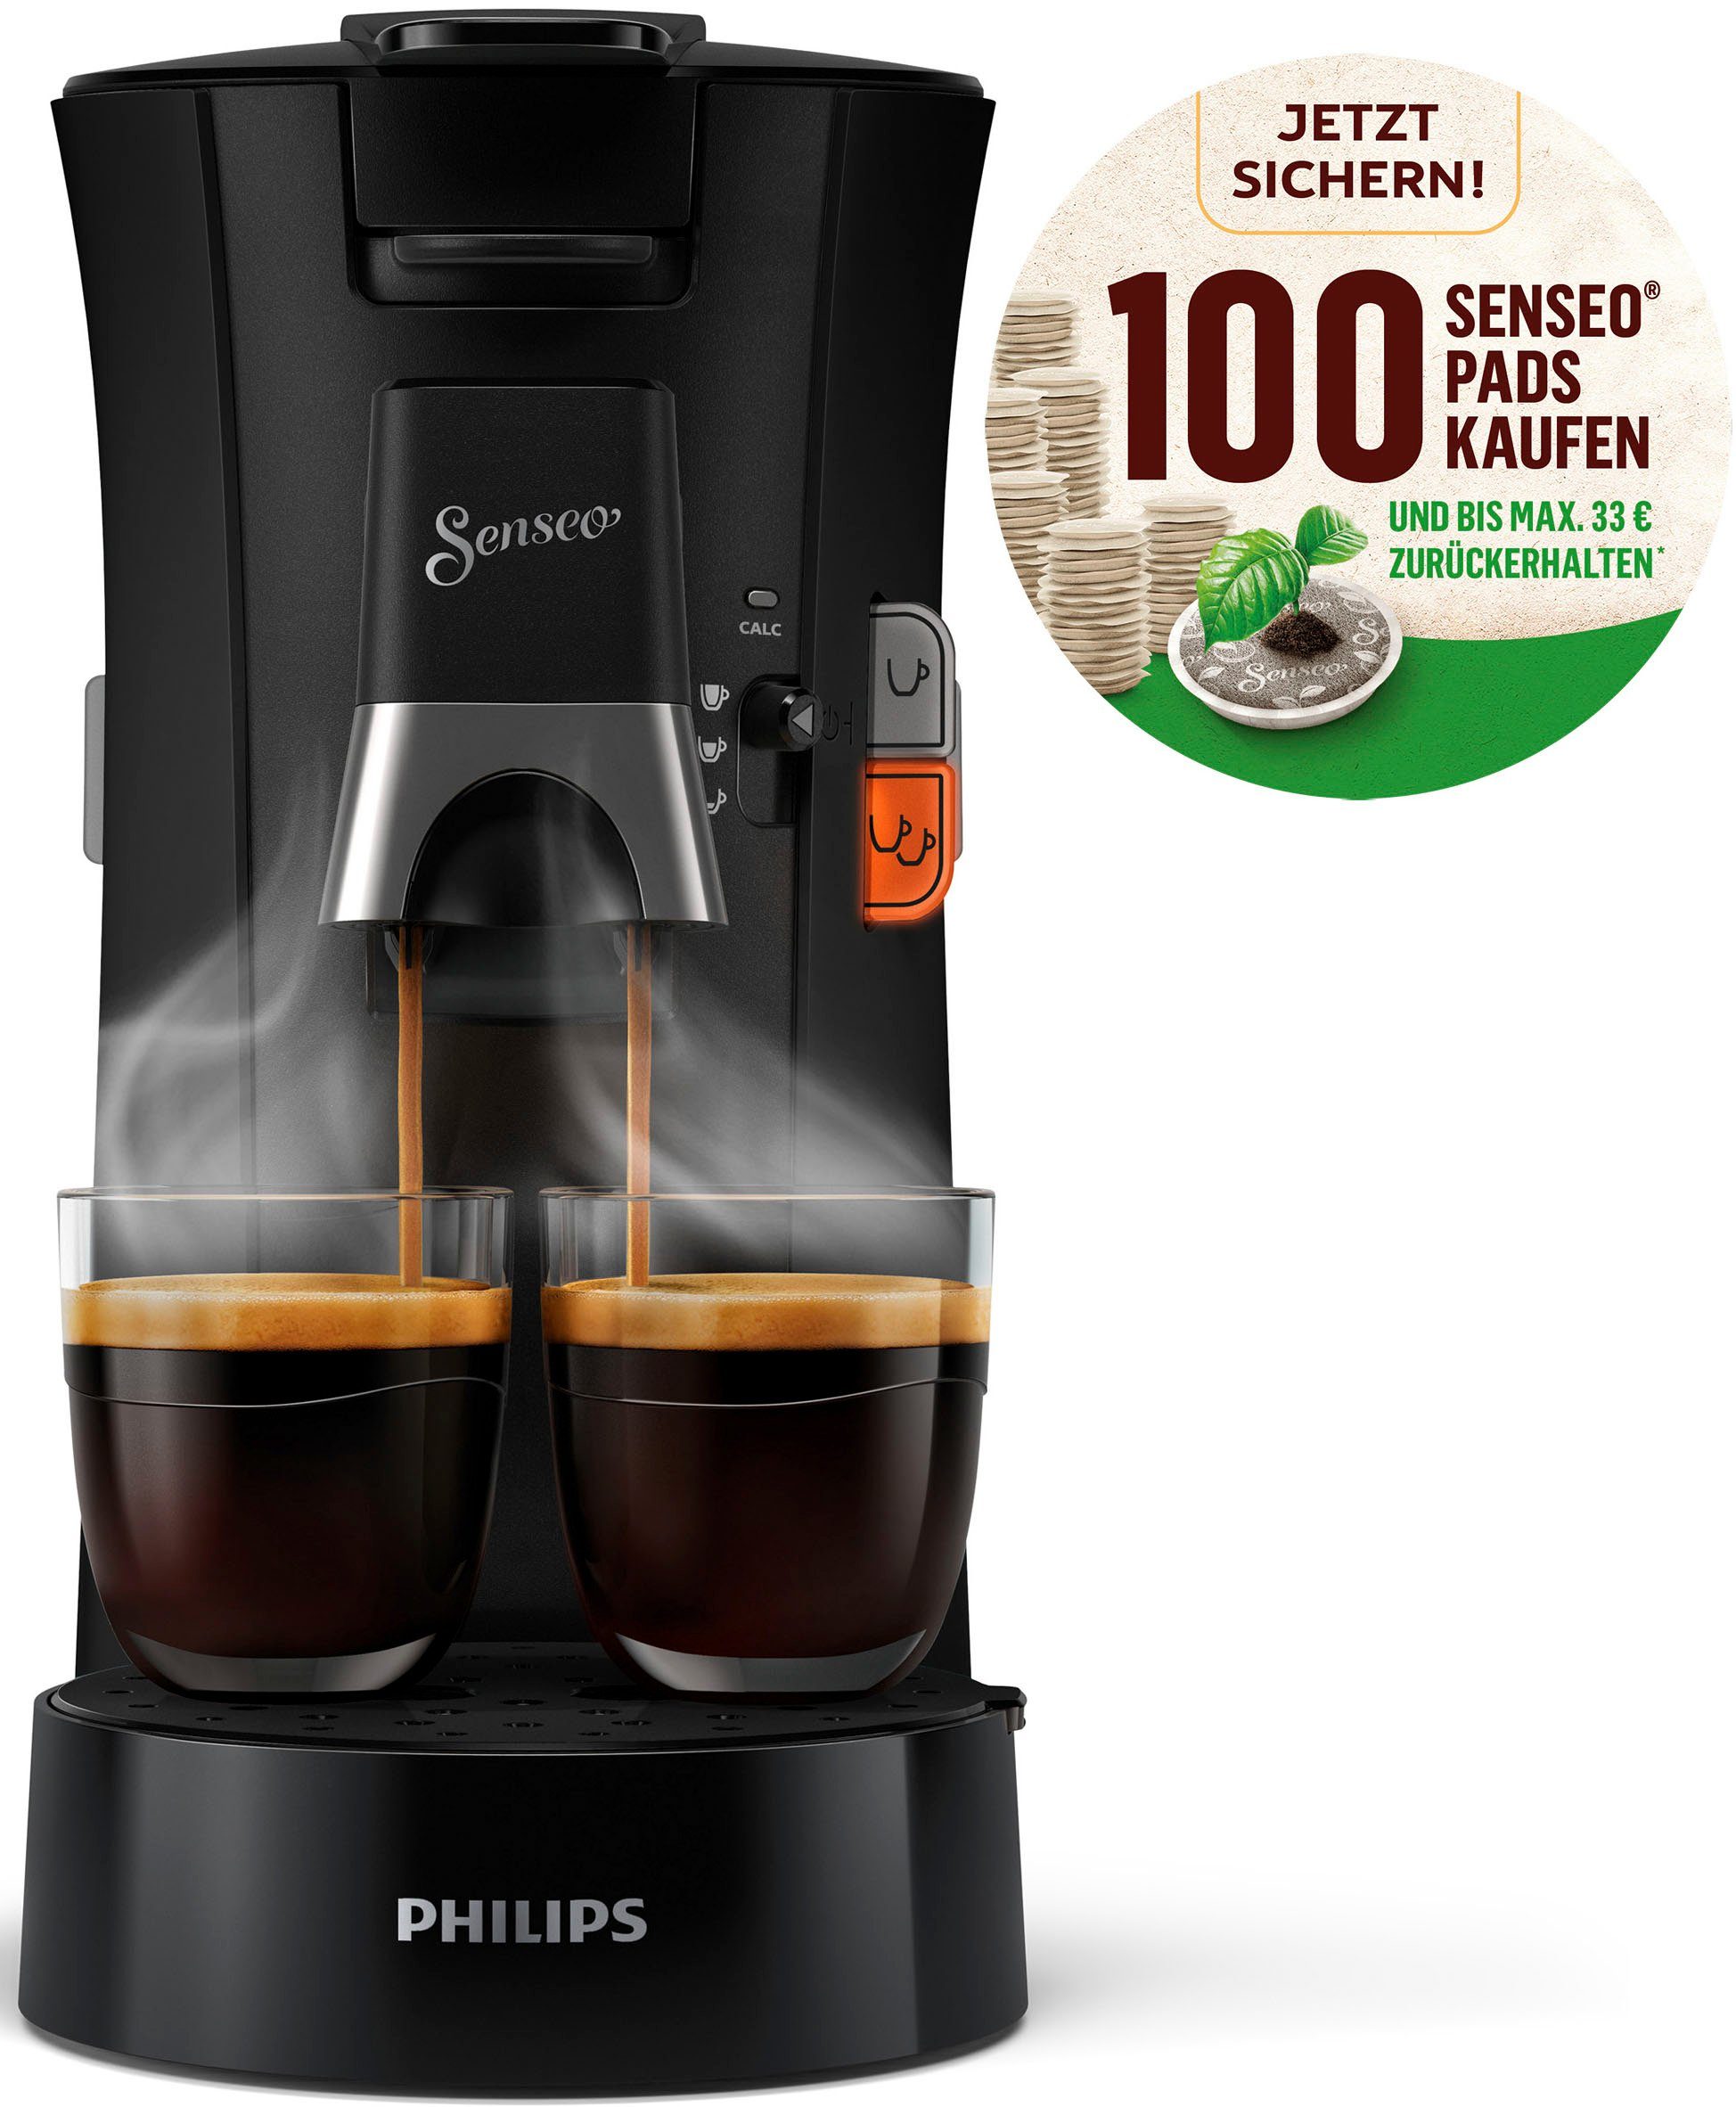 Philips Senseo Kaffeepadmaschine Select CSA230/69, aus 21% recyceltem Plastik, Crema Plus, 100 Senseo Pads kaufen und bis zu 33  zurückerhalten